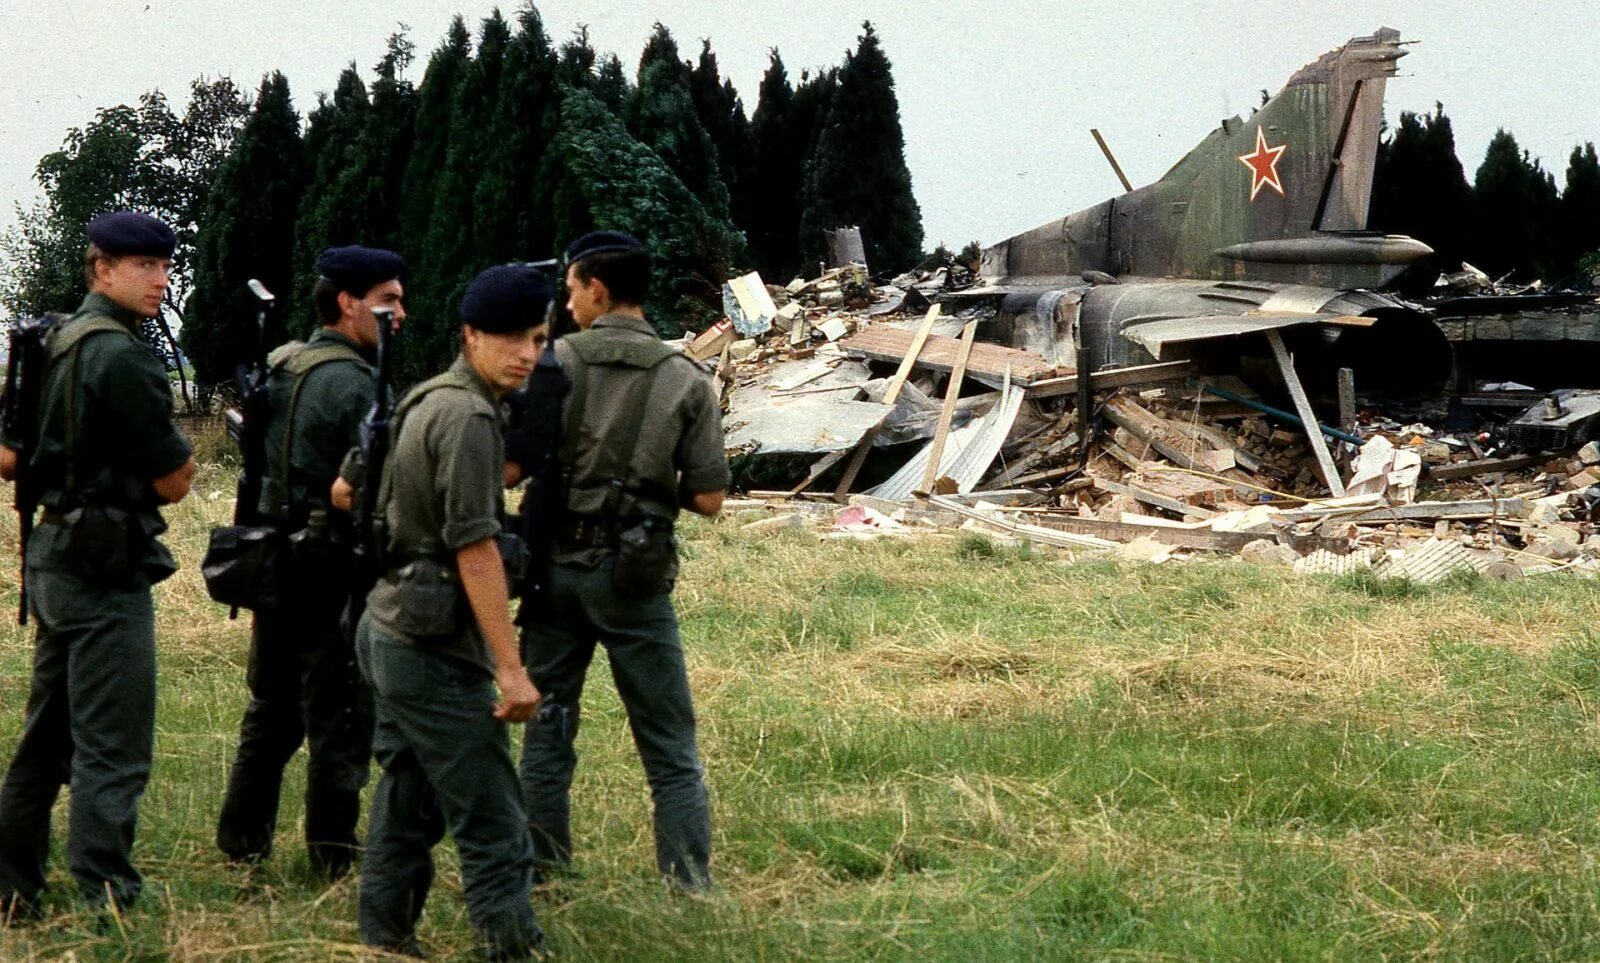 Сбежавший истребитель. Катастрофа миг-23 в Бельгии 4 июля 1989 года. Миг 23 упал в Бельгии 1989 год. Катастрофа миг-23 в Бельгии. 1989 Катастрофа миг 23 в Бельгии.